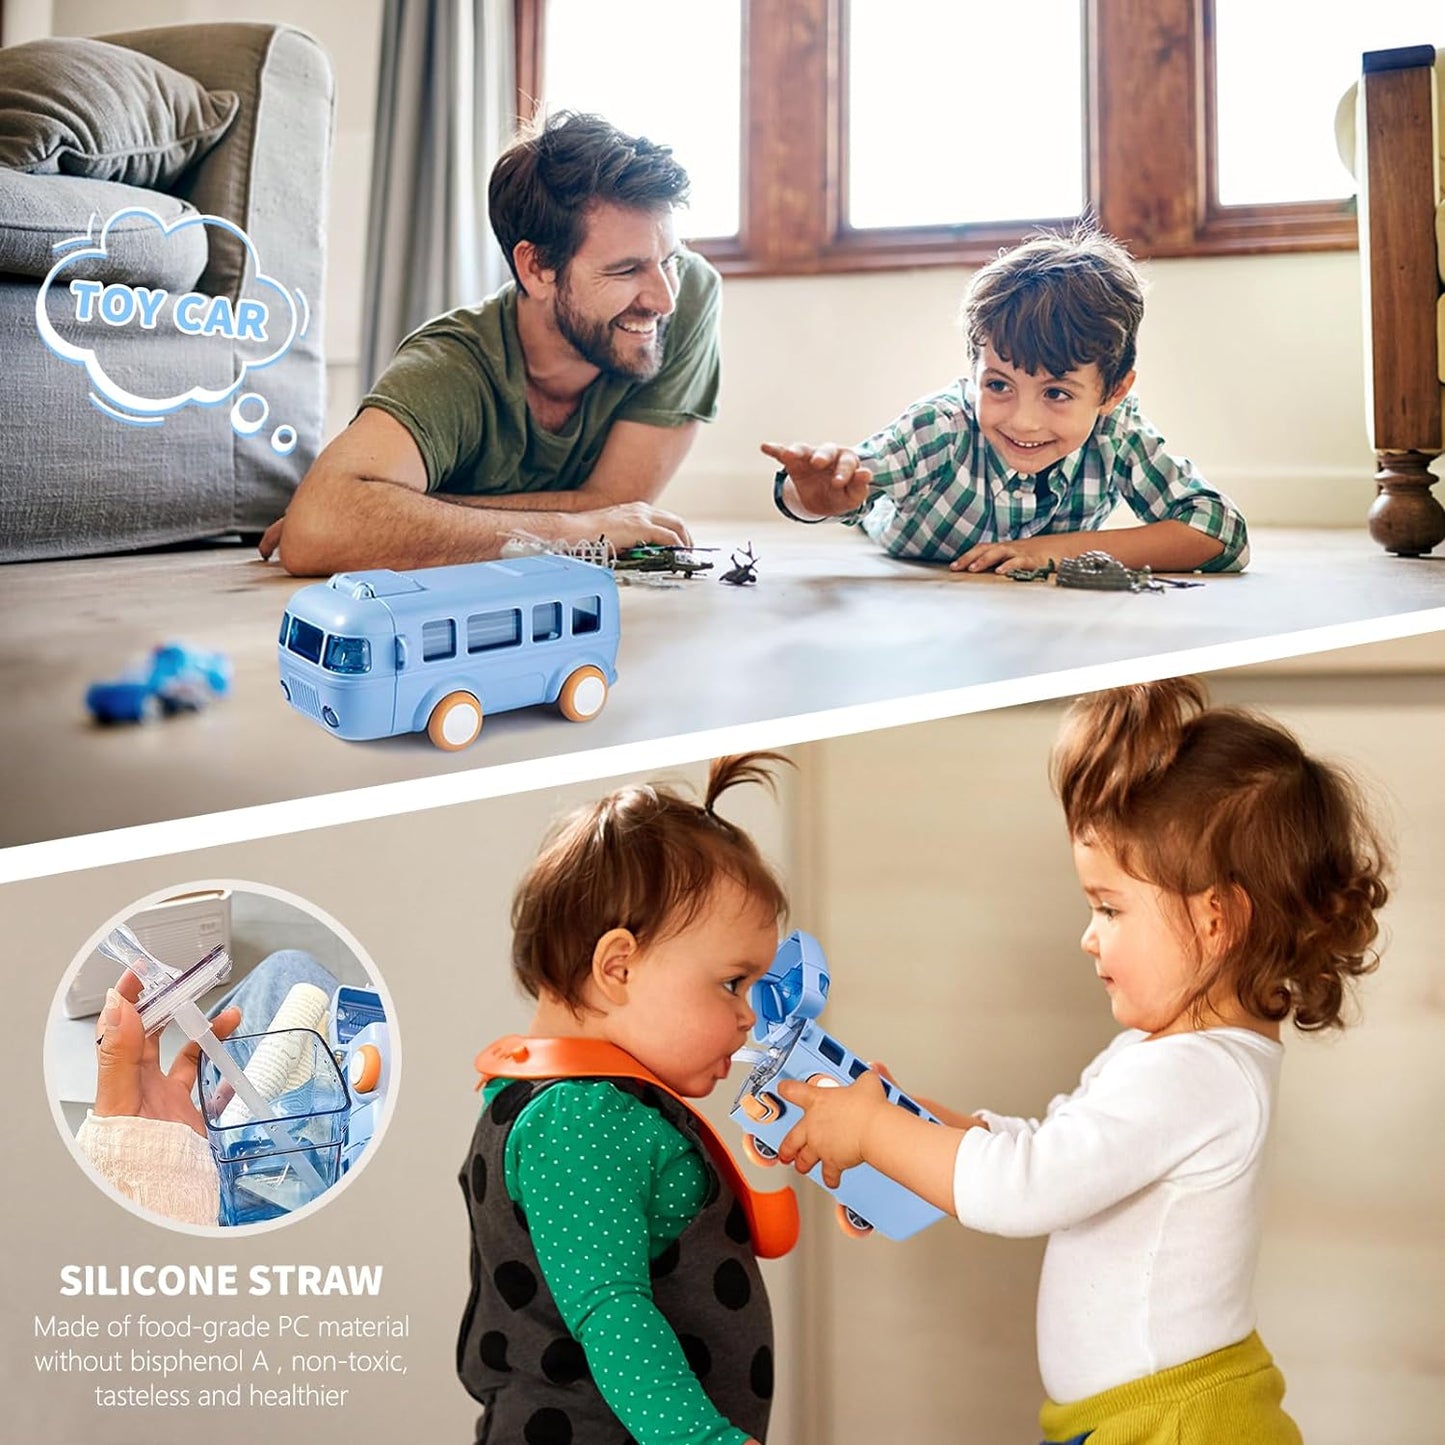 Cute Water Bottle for Kids